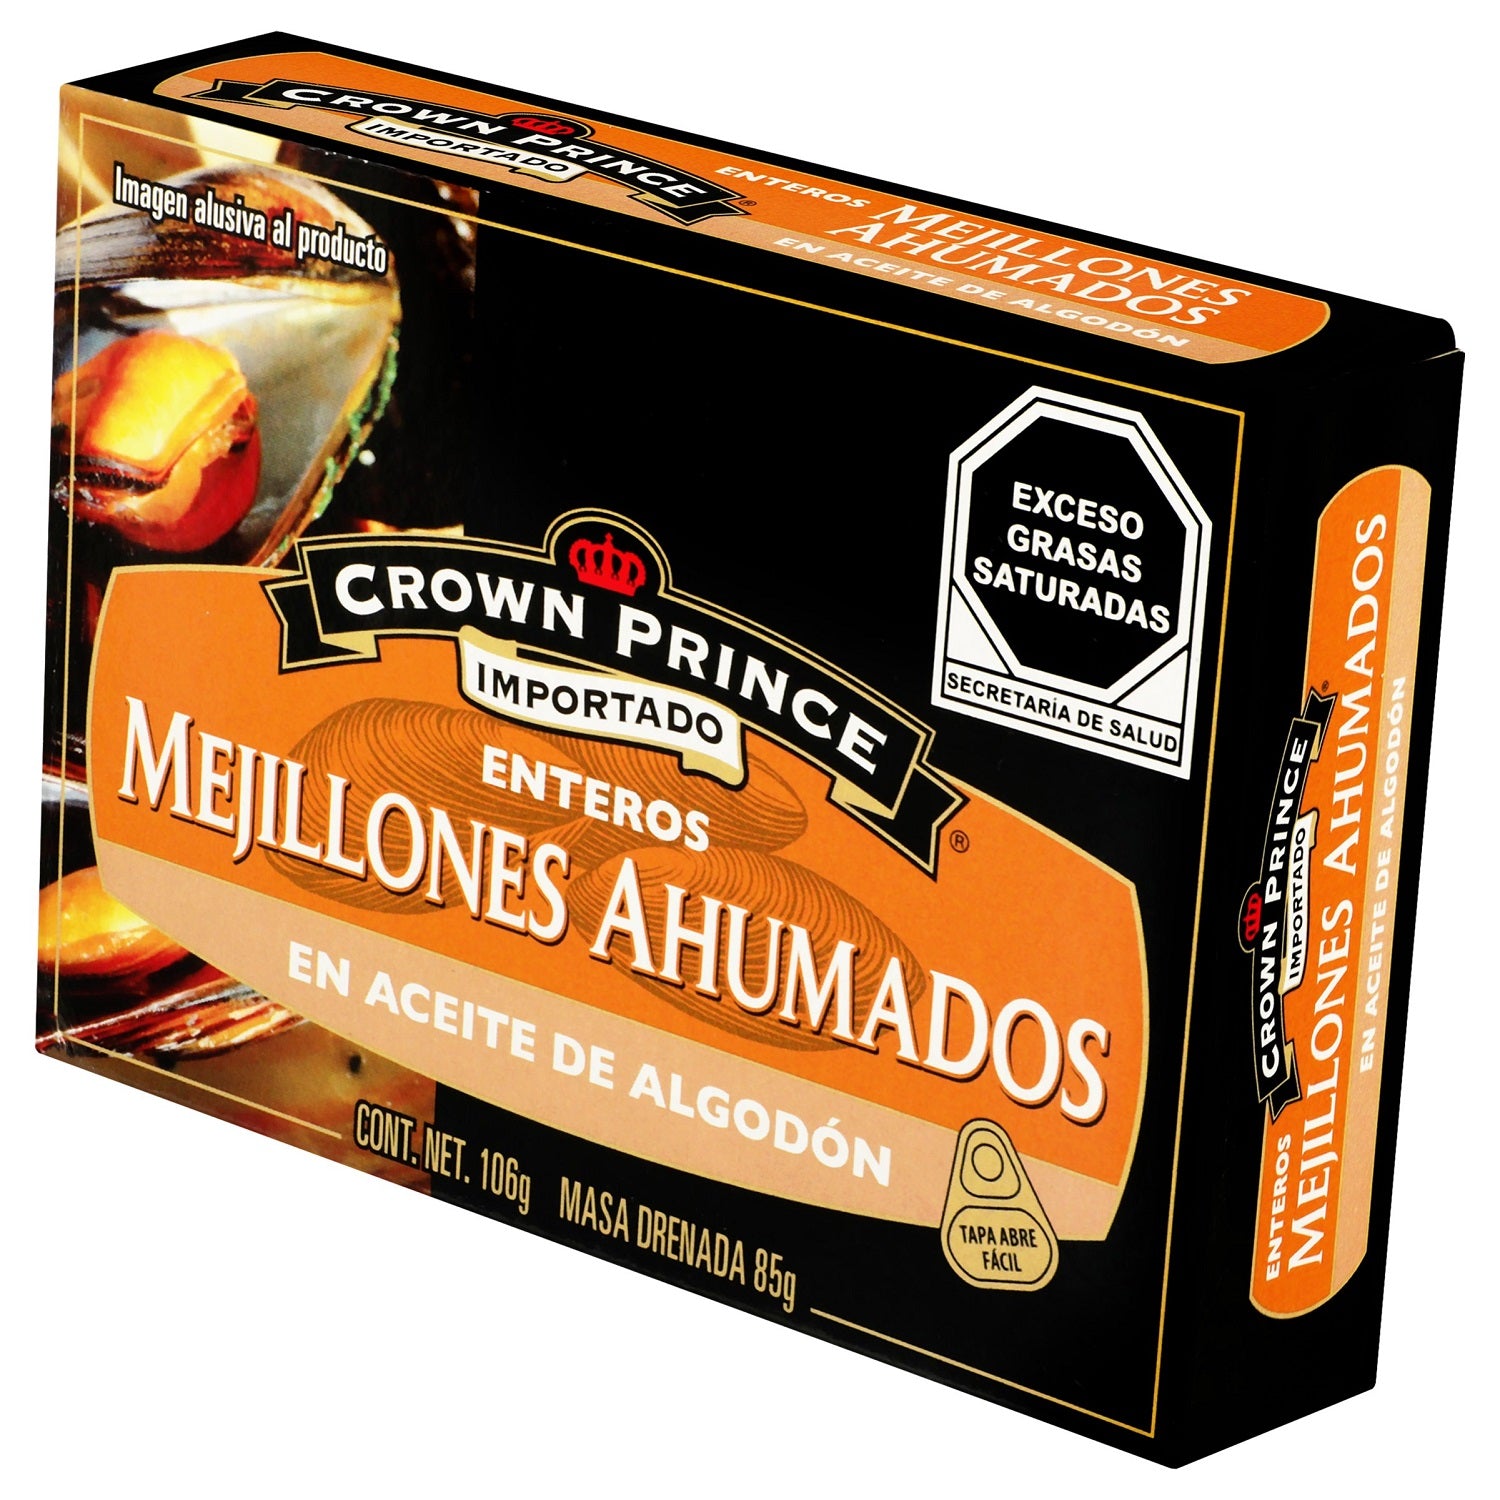 Crown Prince - Mejillones Ahumados Aceite de algodón - 106 gr